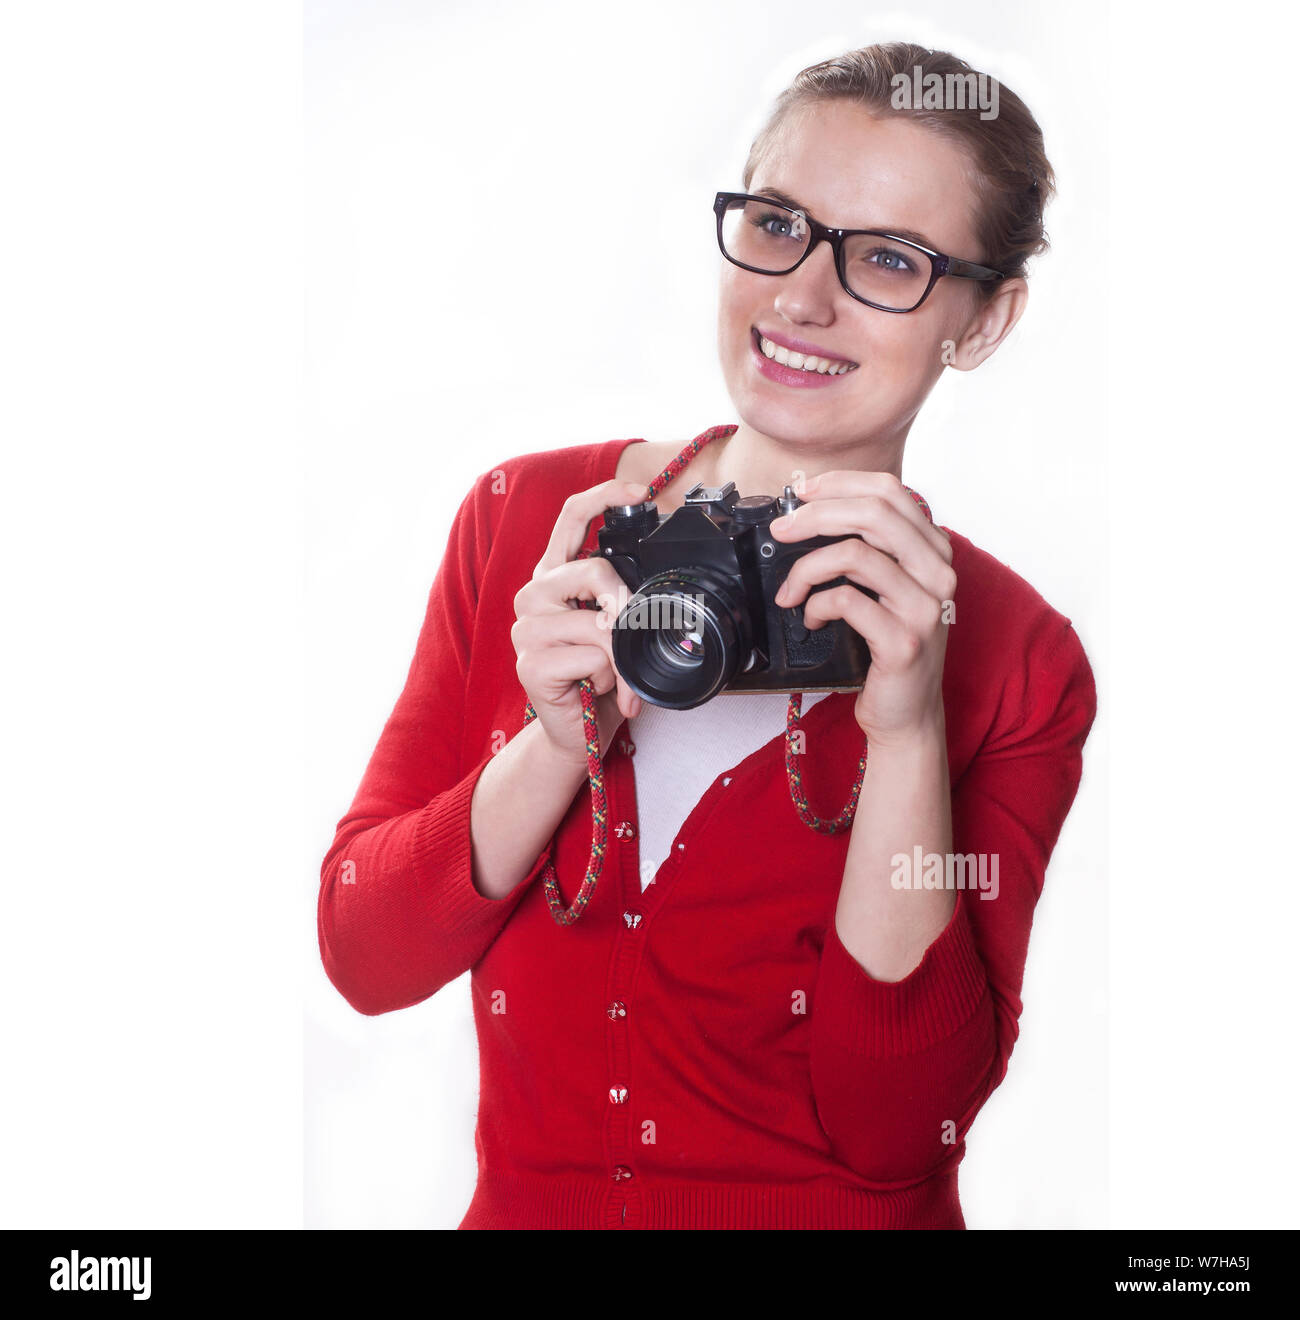 Jeune fille avec un sourire qui se présentent comme des holding vintage camera photographe, sur fond blanc. Banque D'Images